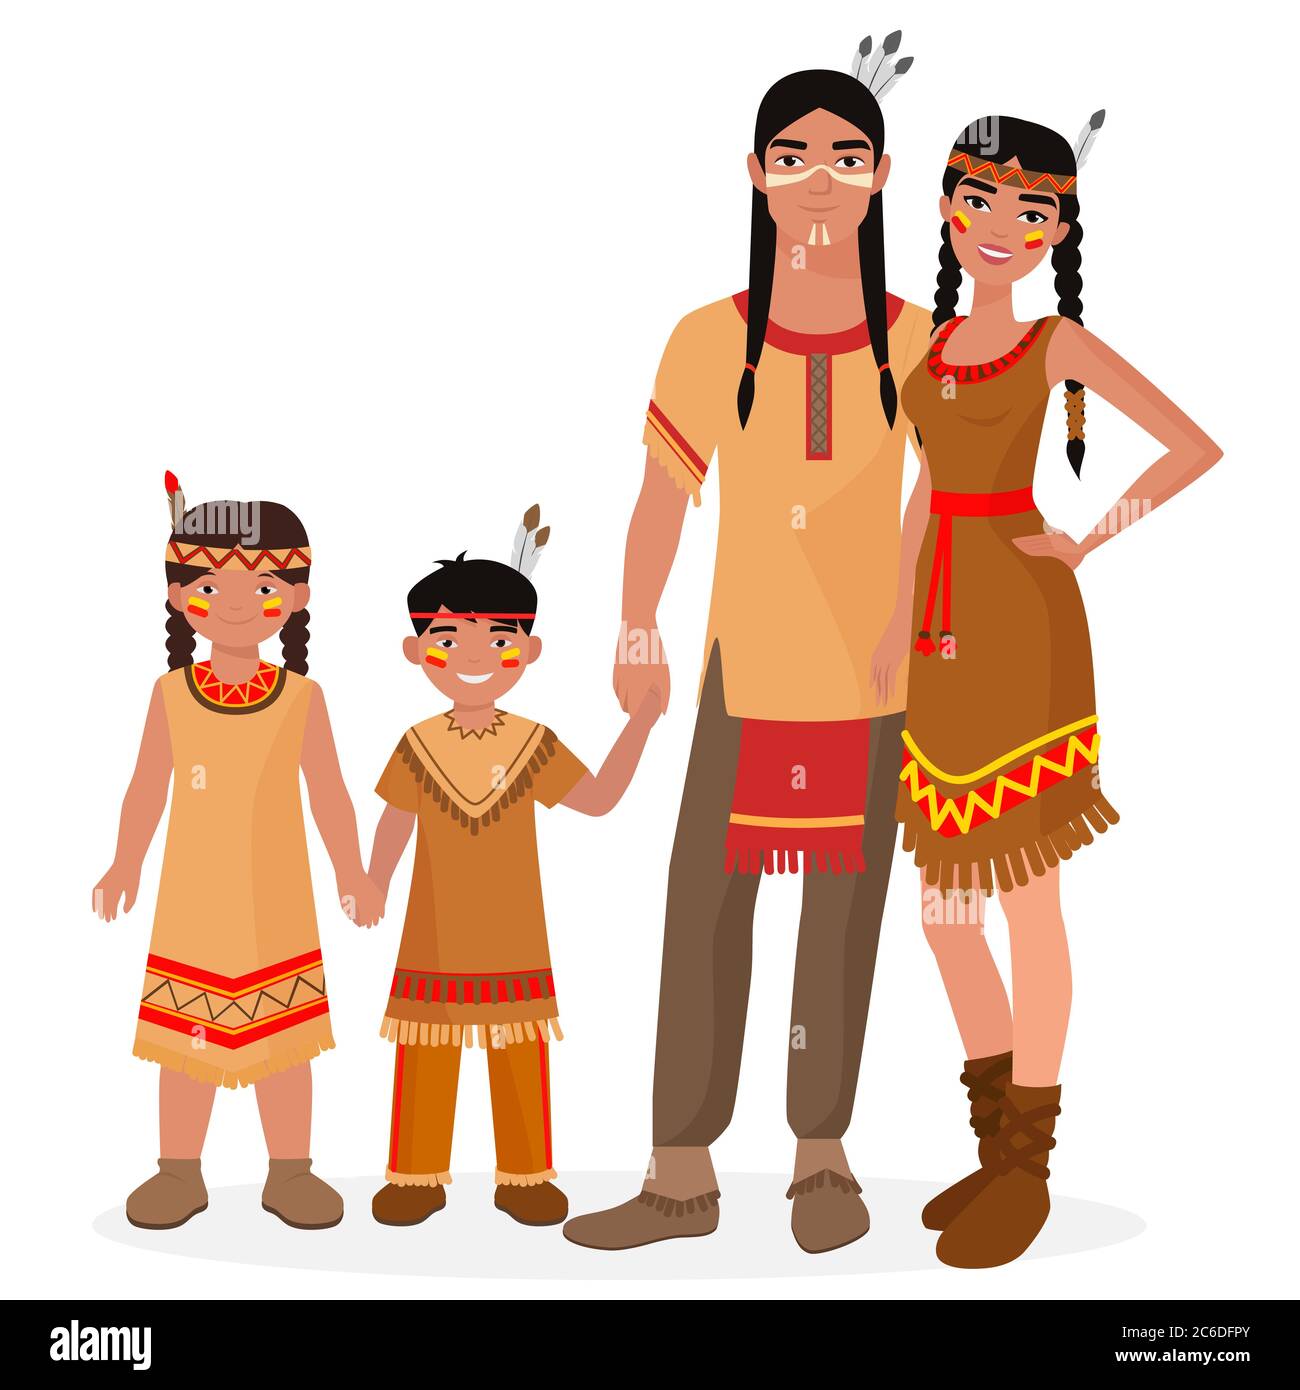 Familia India tradicional nativa americana. Hombre y mujer indios americanos. Niño y niña de la India americana. Gente Apache Ilustración del Vector